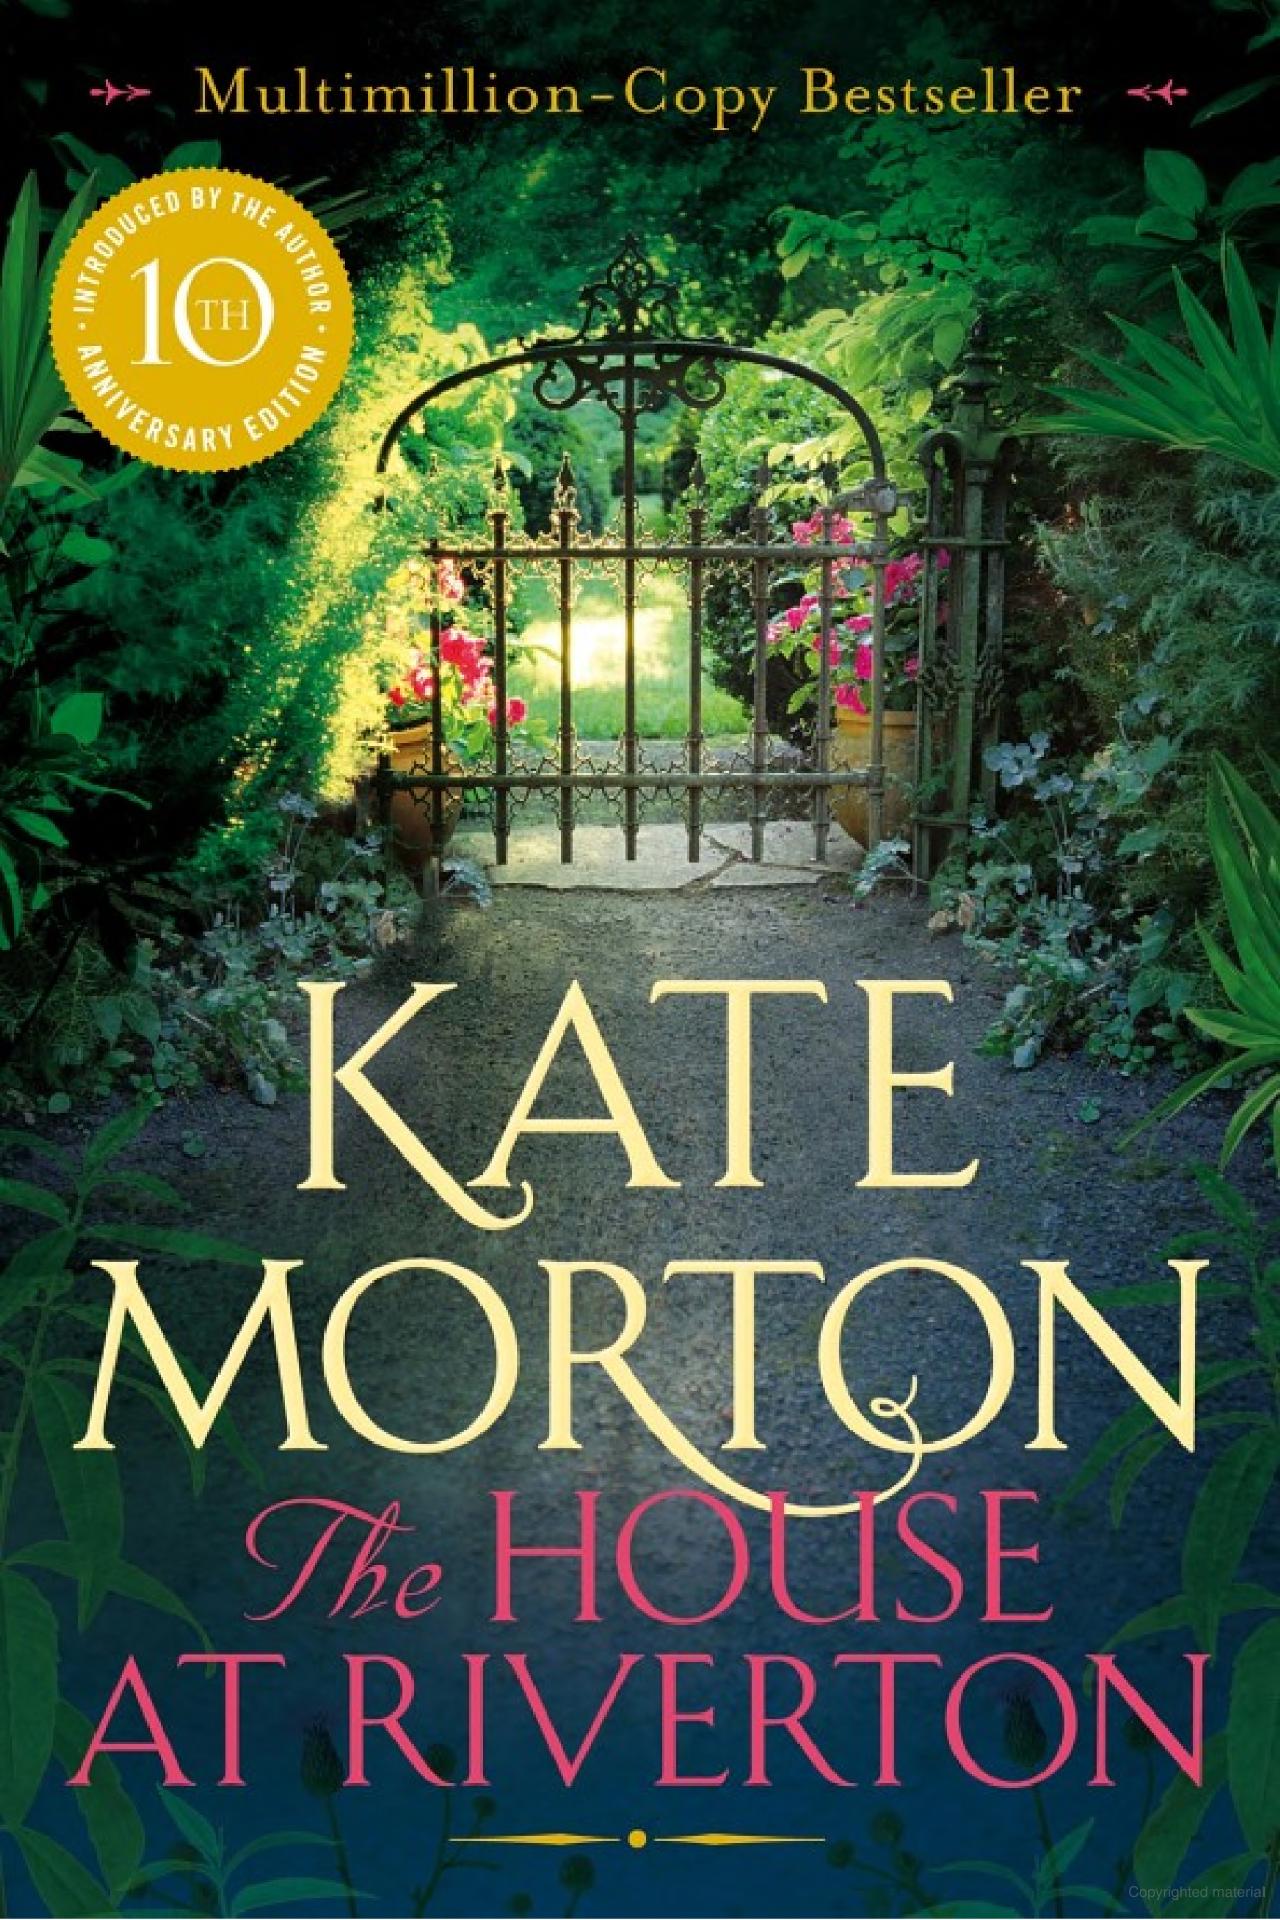 Kate Morton: The house at Riverton (2007, Pan)